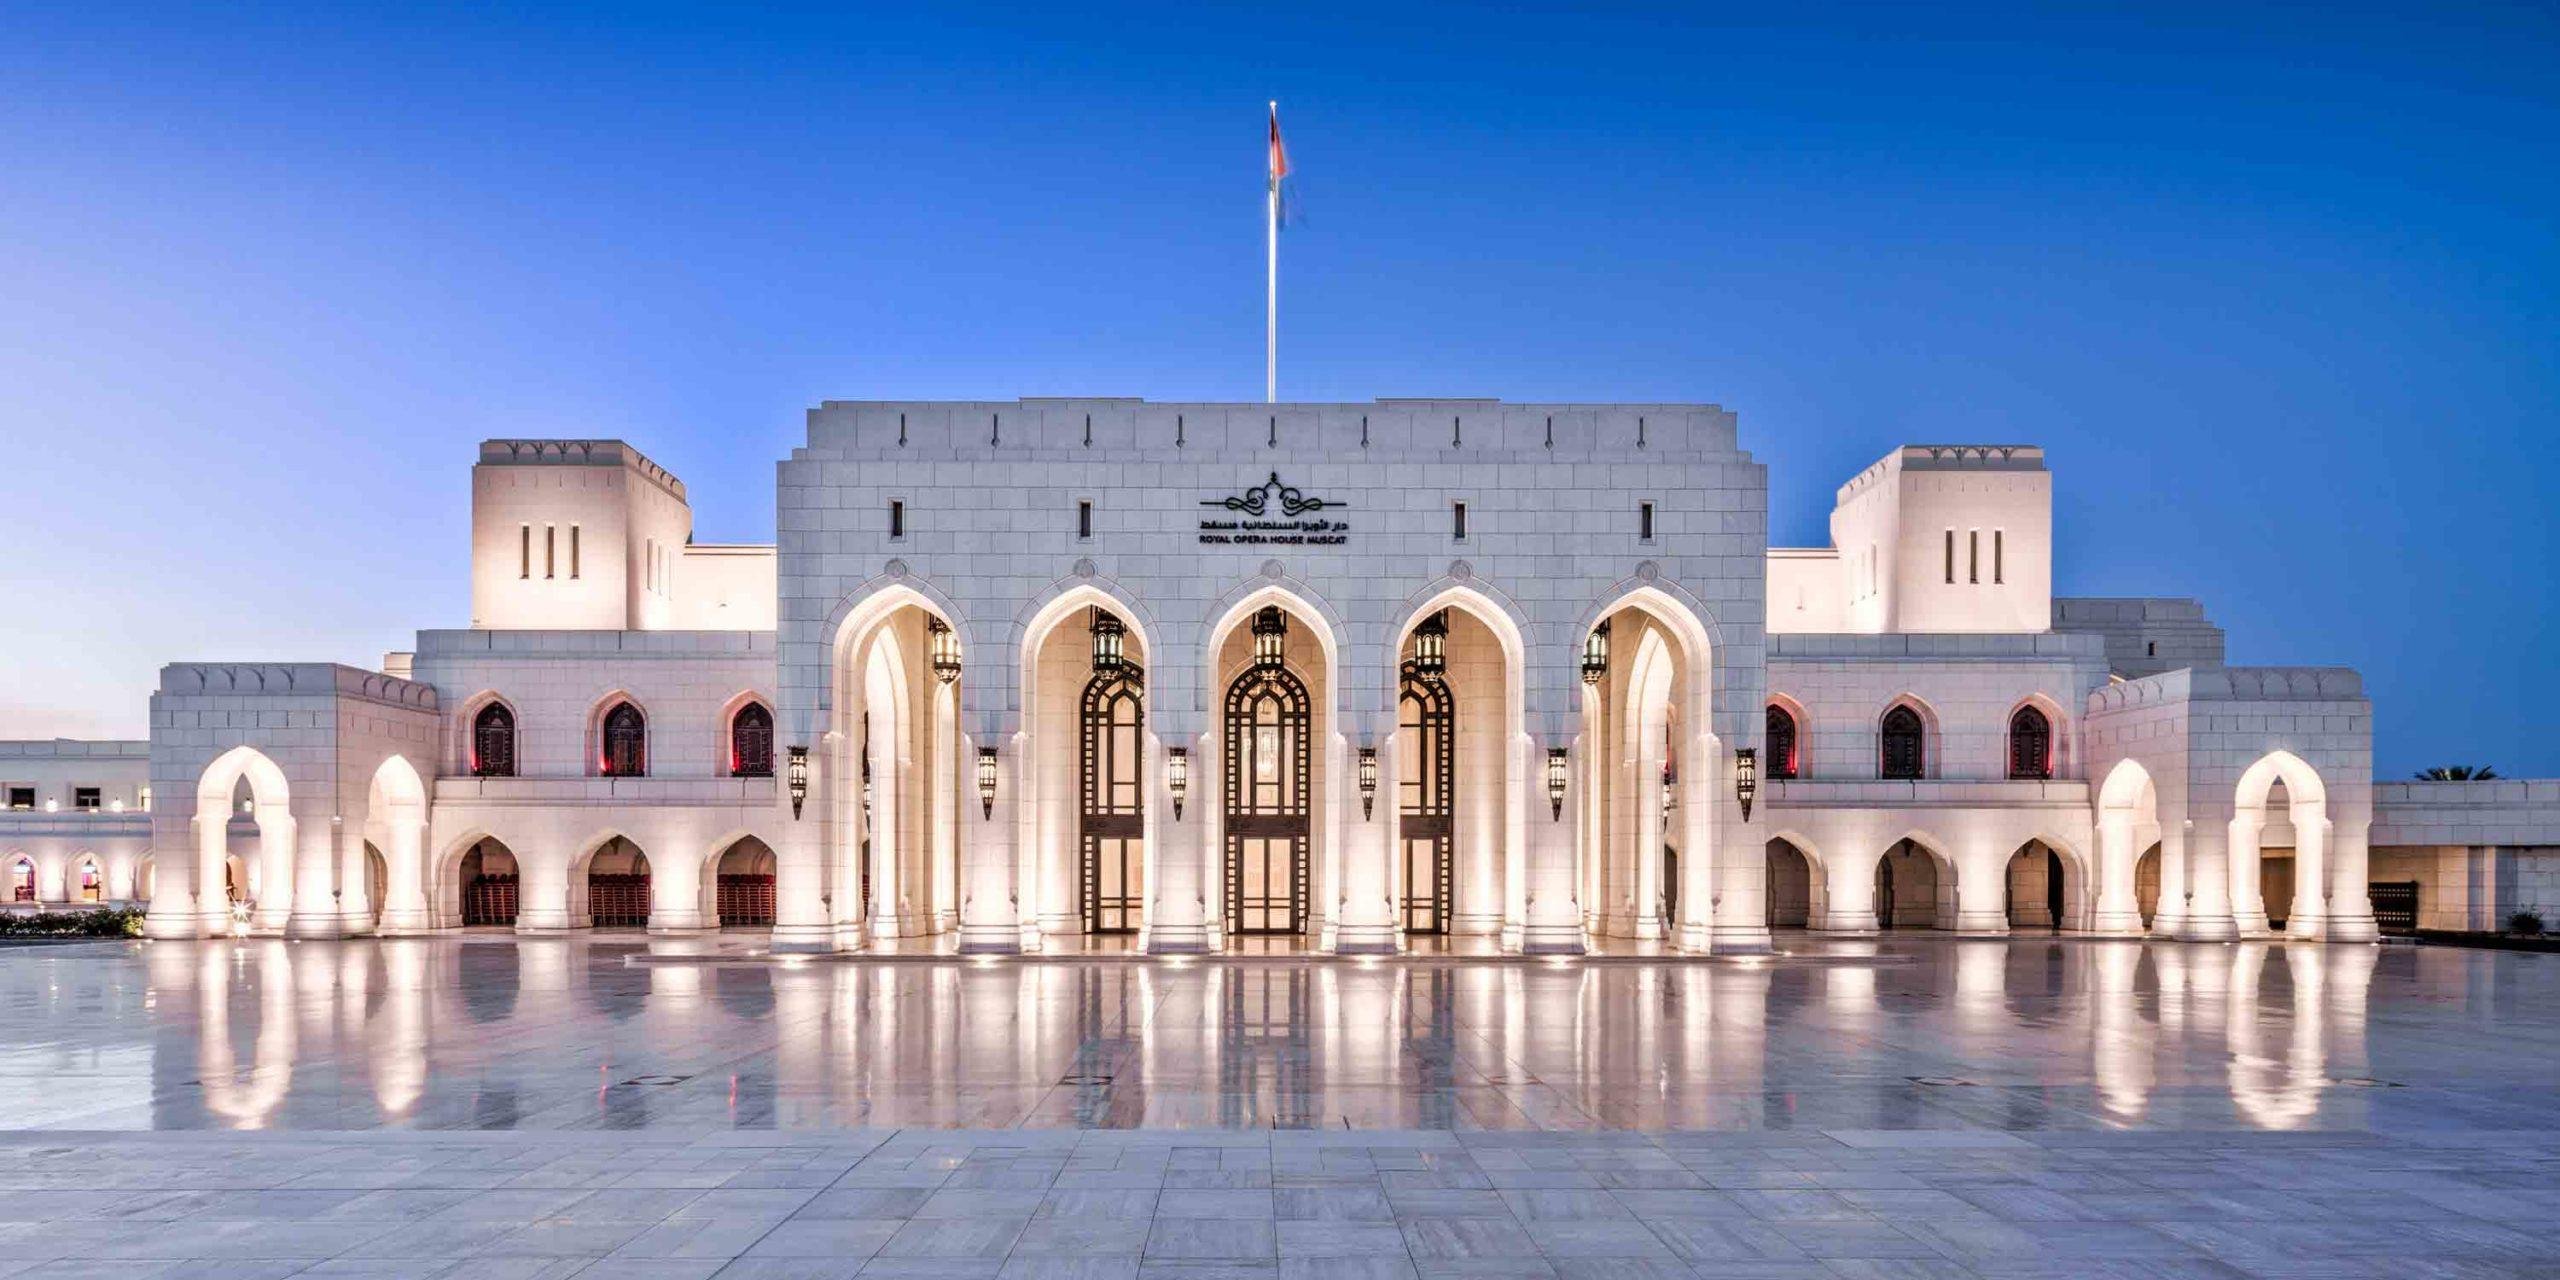 أماكن سياحية   السياحة في عمان   سياحة   سفر   عمان